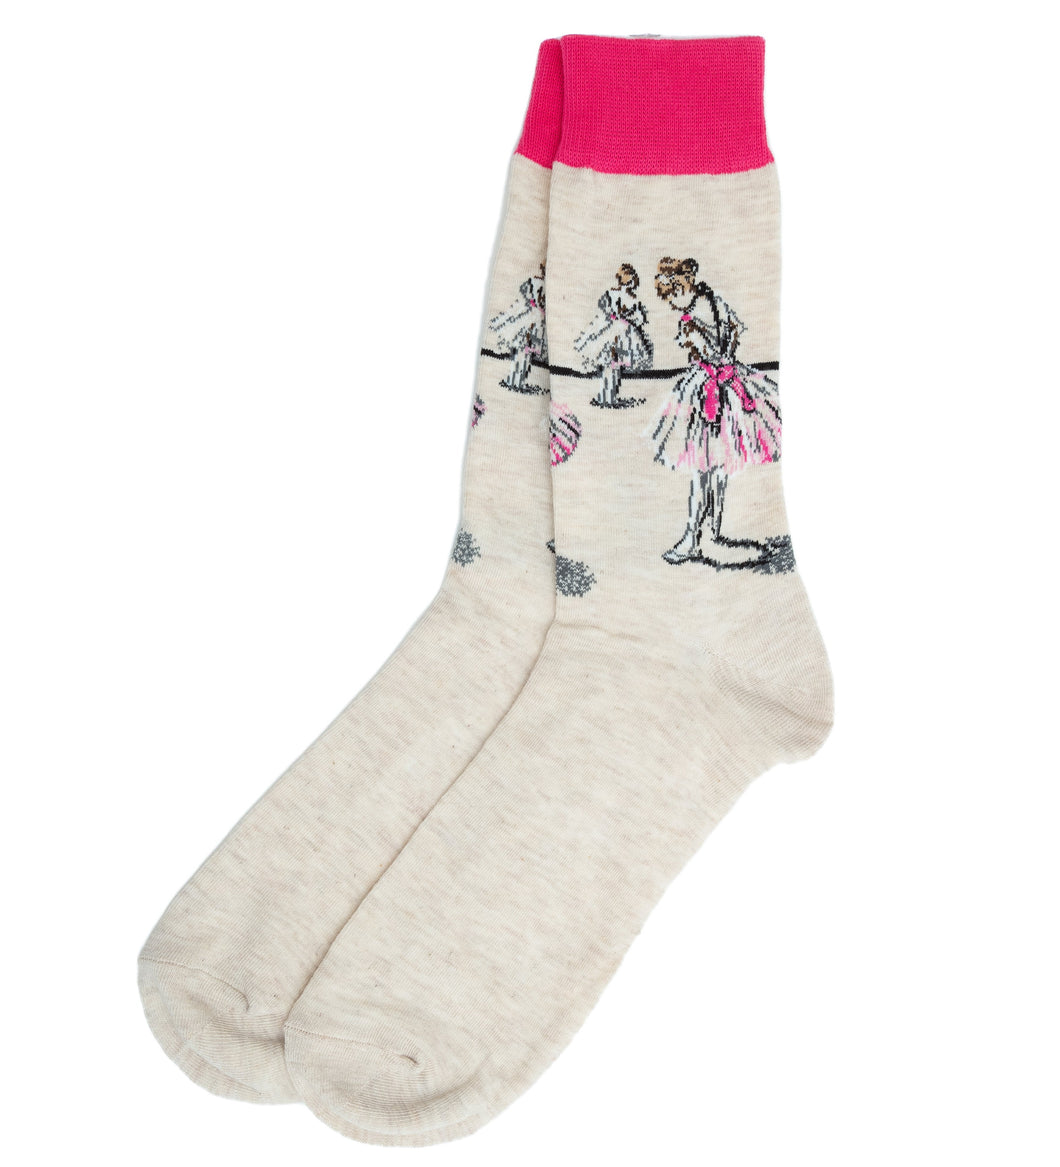 degas dancer socks